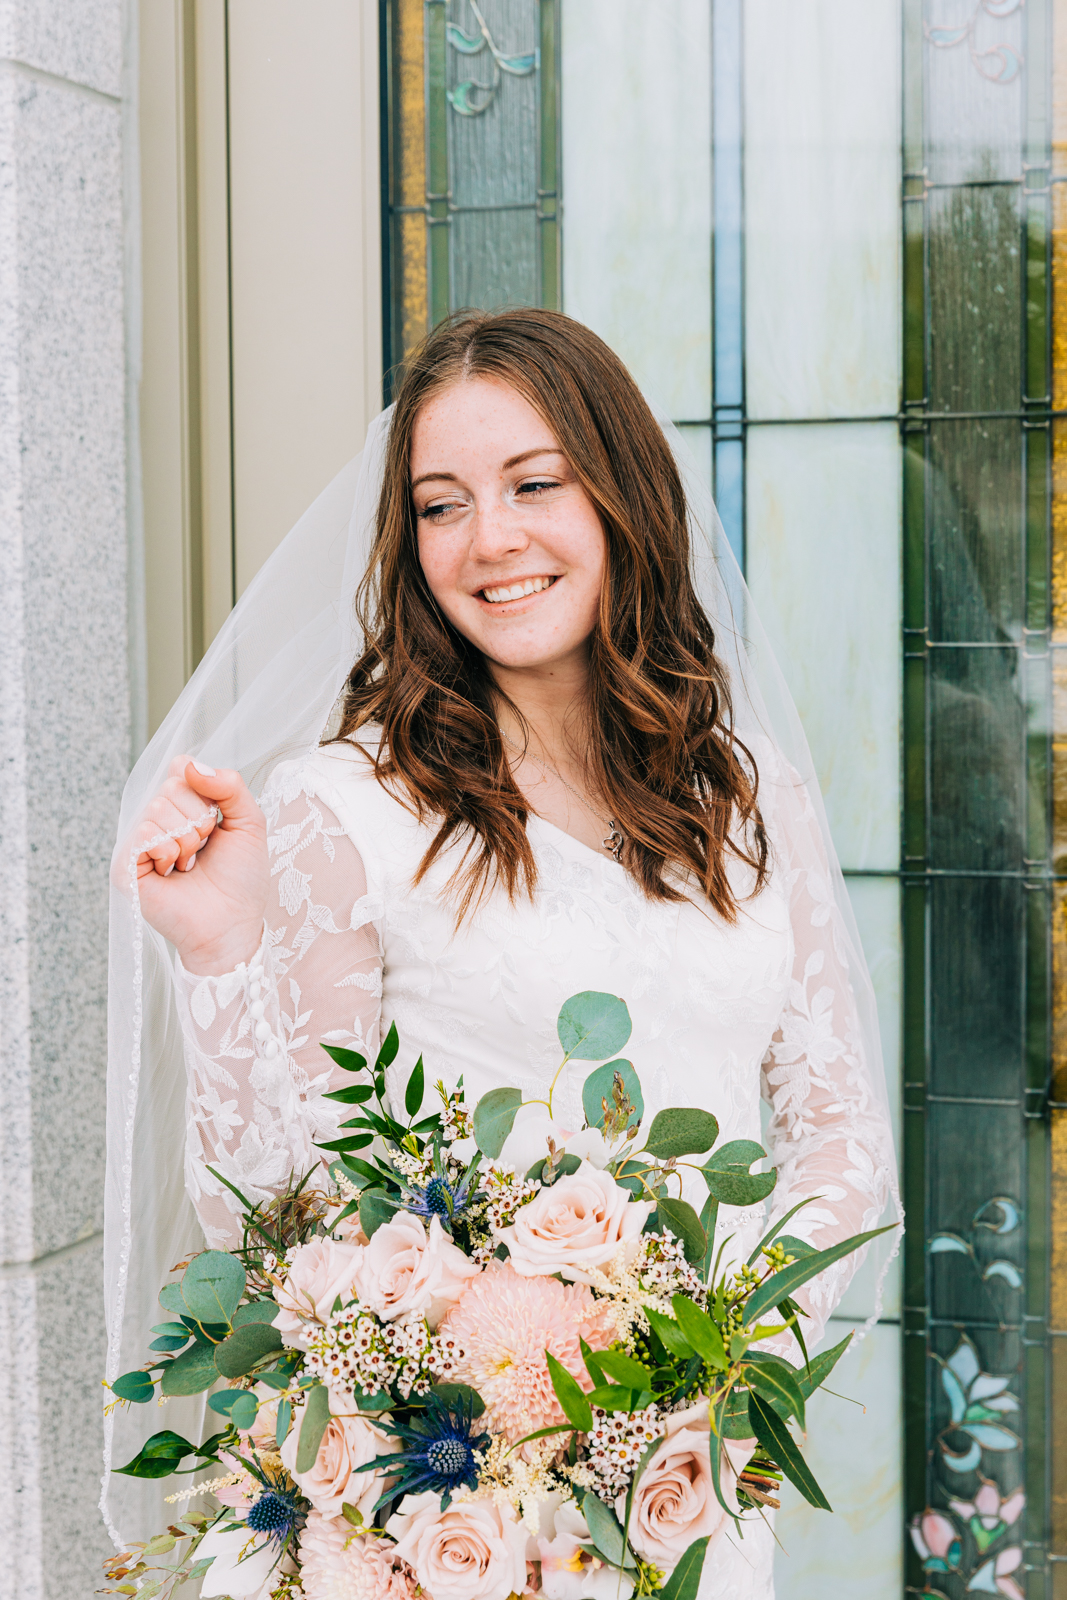 Jackson Hole wedding photographer captures margeenes dress pocatello weddi g